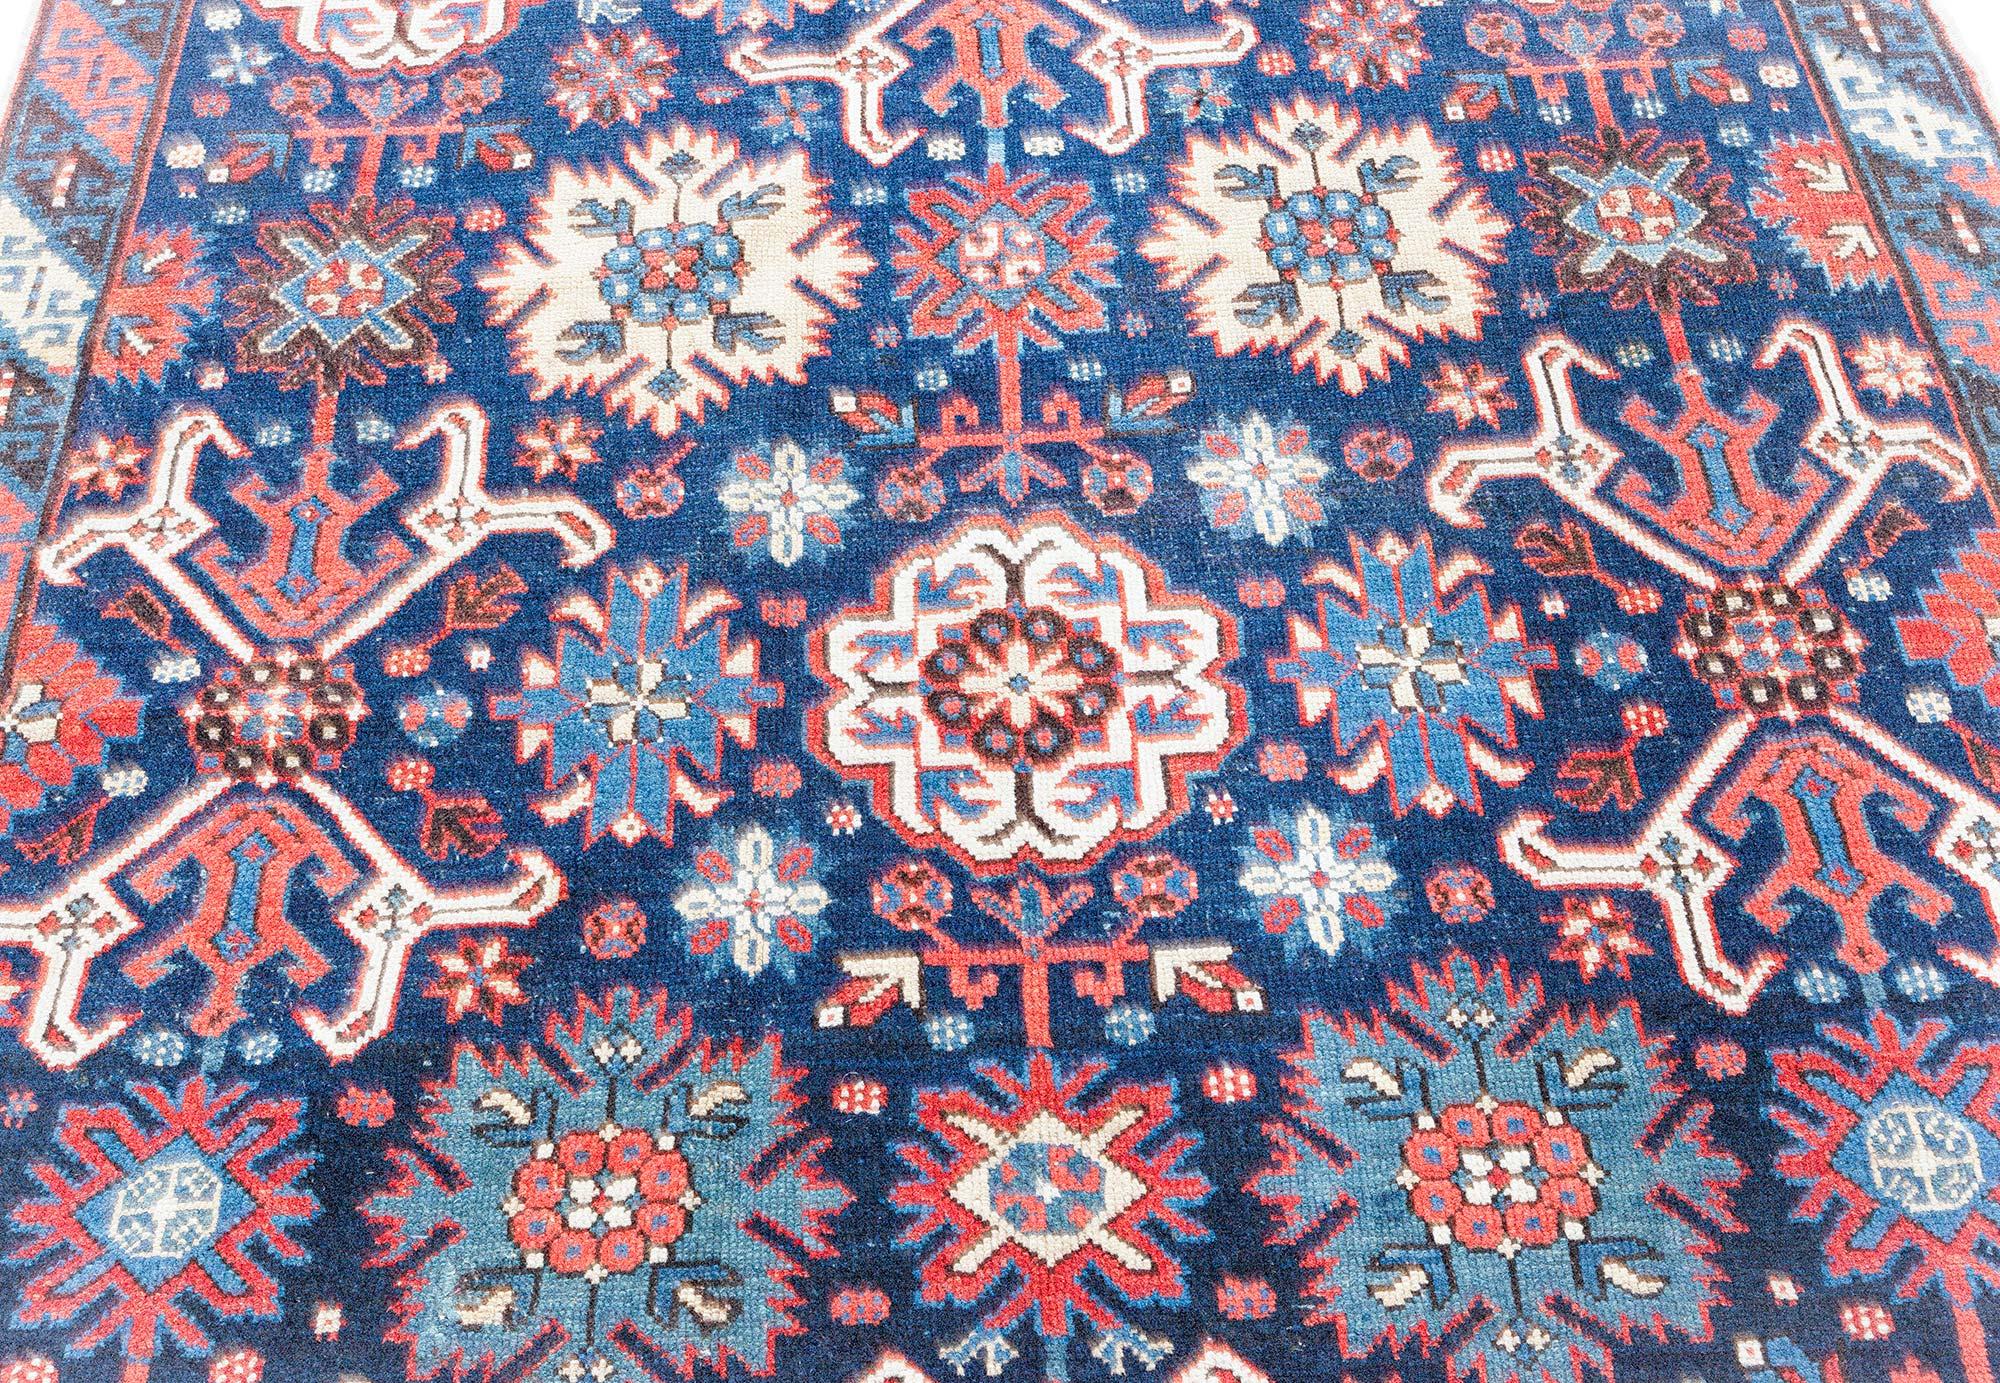 Antique Karabagh rug
Size: 5'2